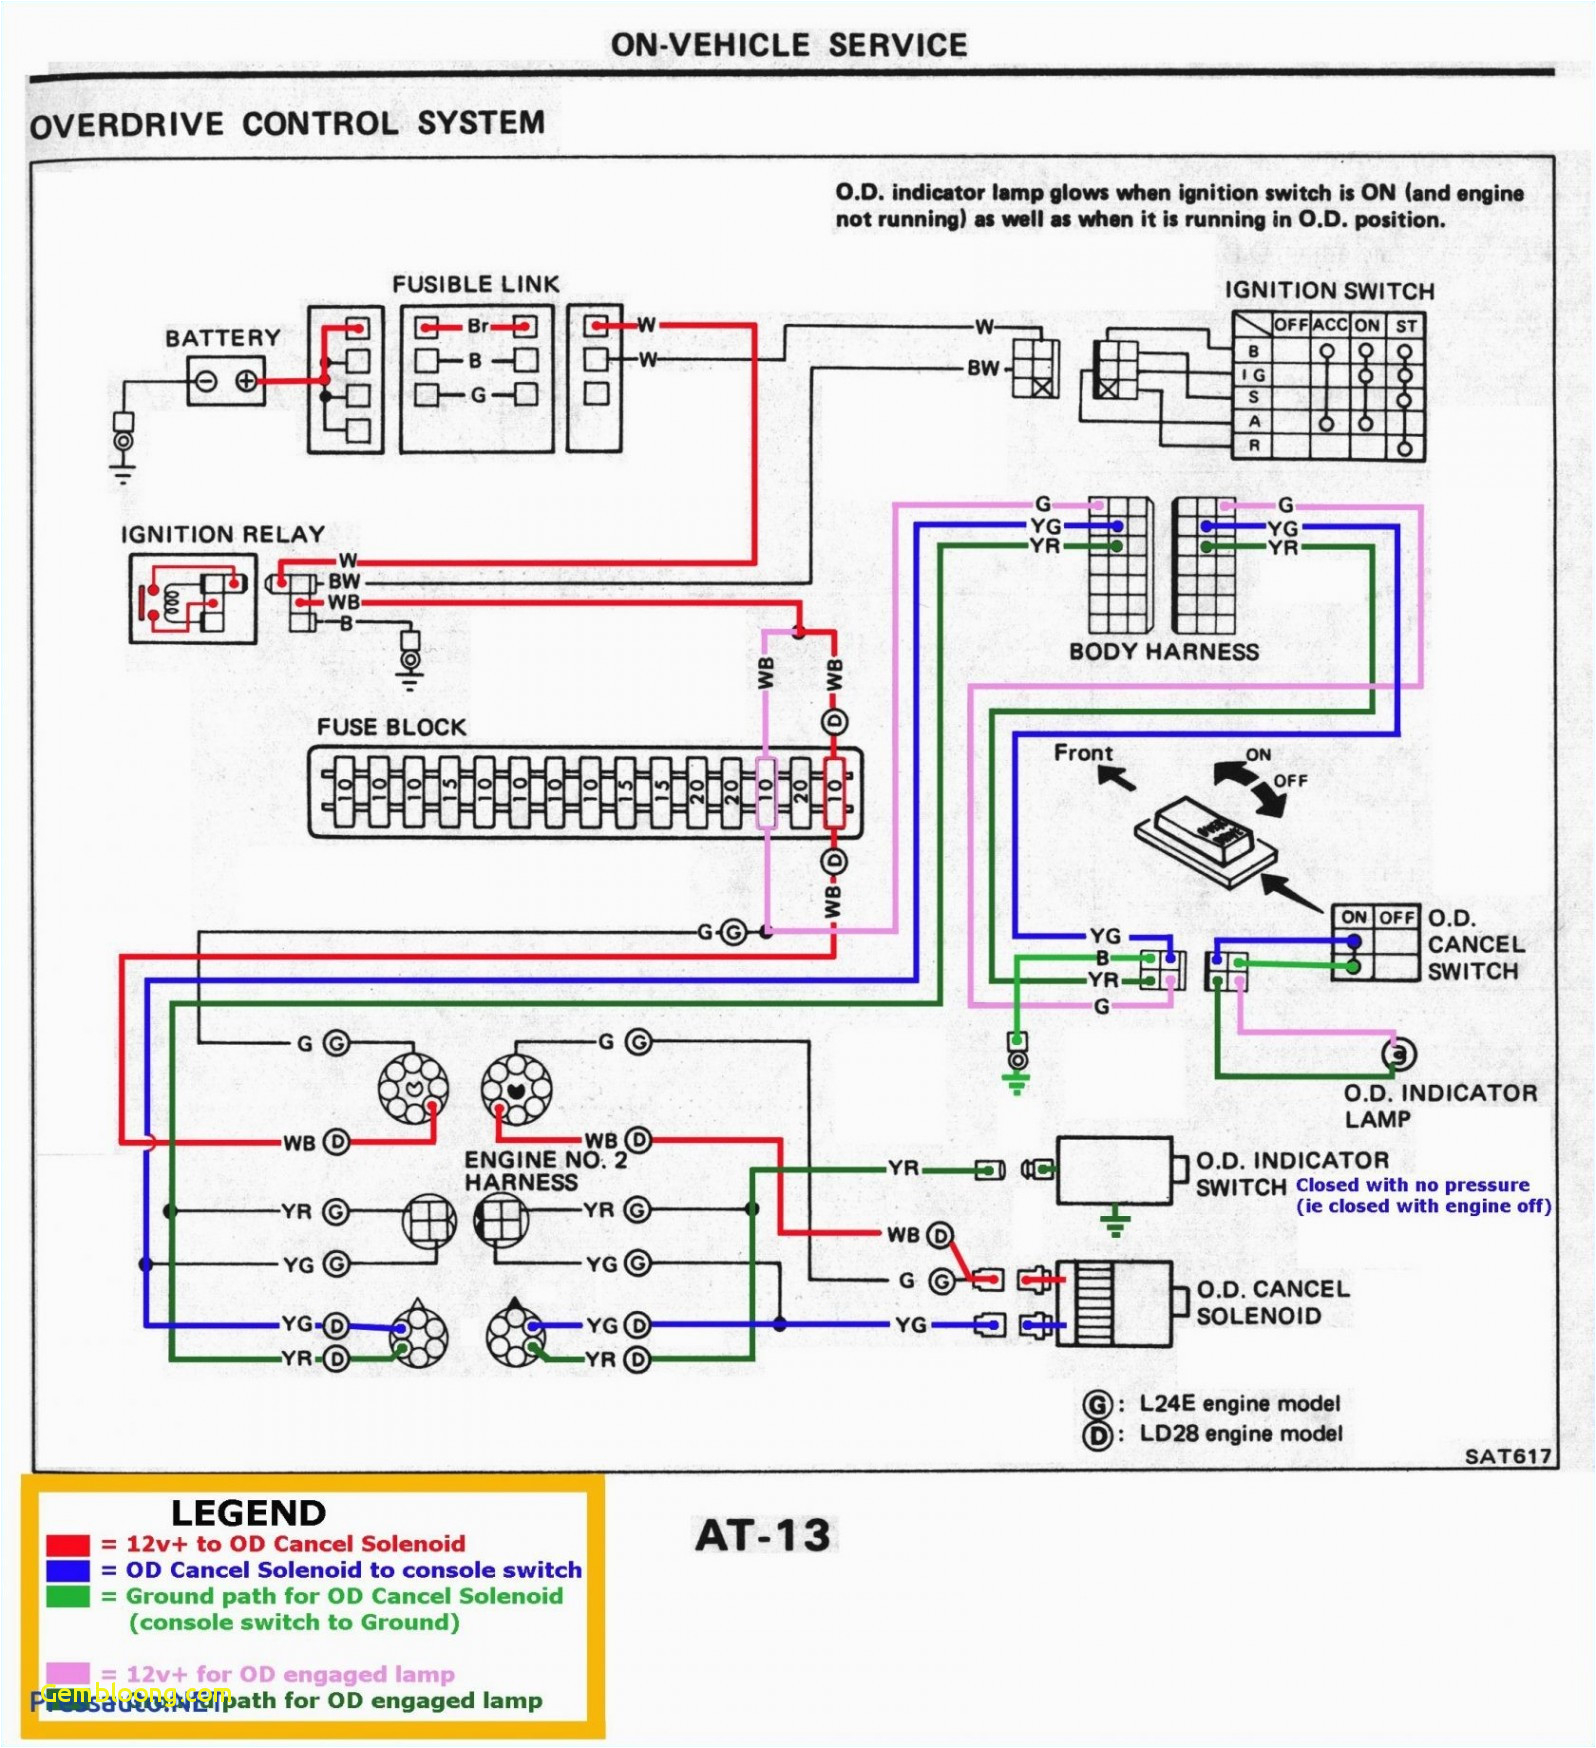 wrg 7265 monotrol pedal wiring diagram free ford trucks wiring diagrams wiring diagram for ford